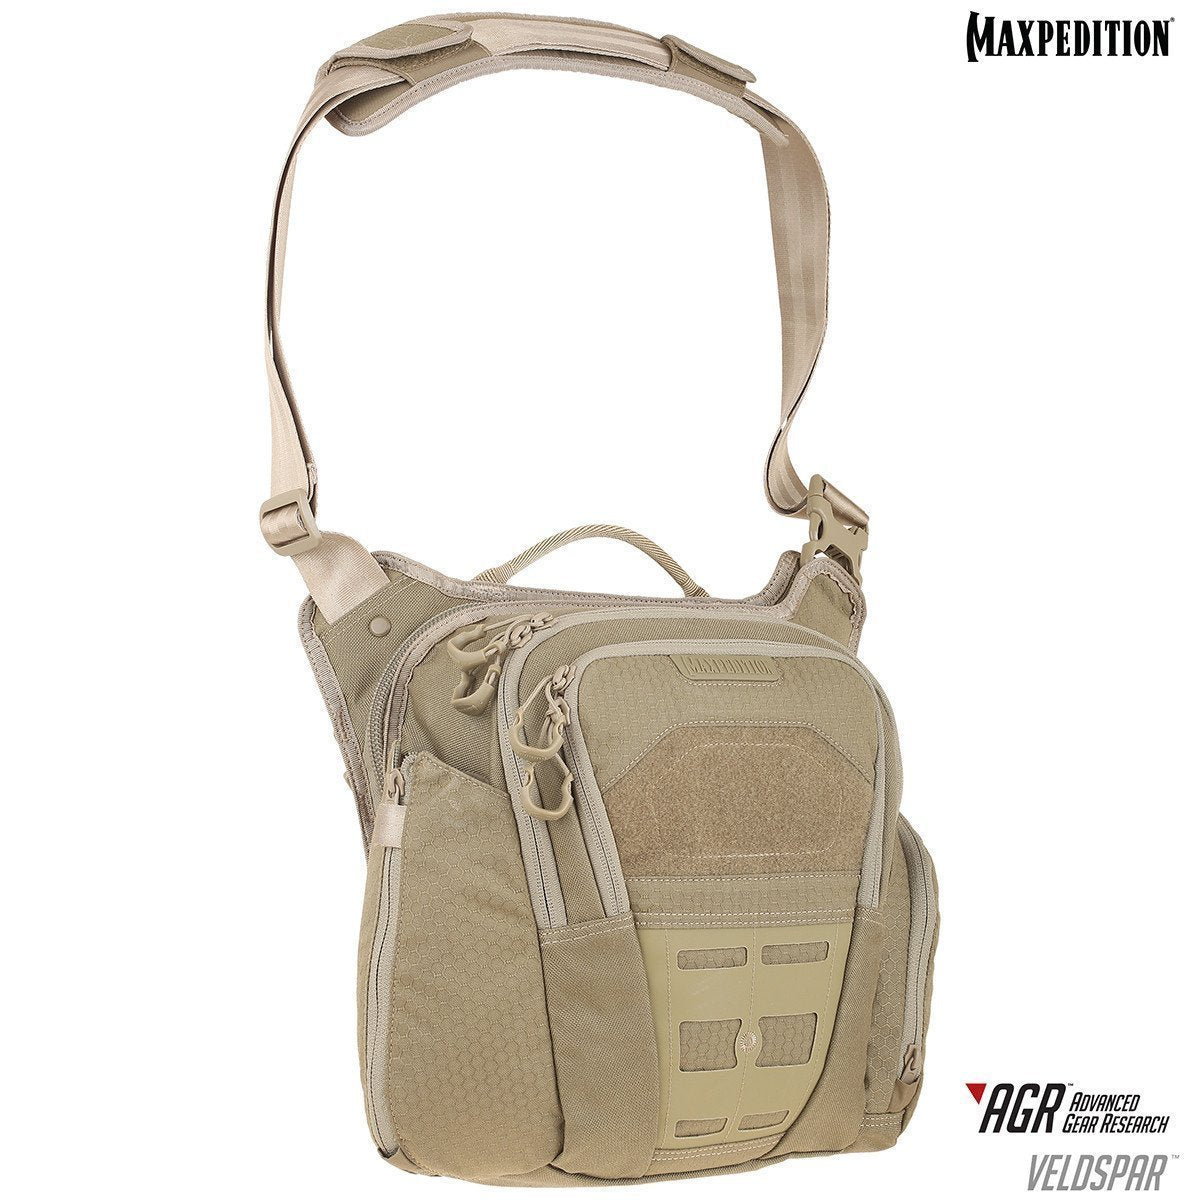 Maxpedition Veldspar Crossbody Shoulder Bag 8L Tan Tactical Distributors Ltd New Zealand